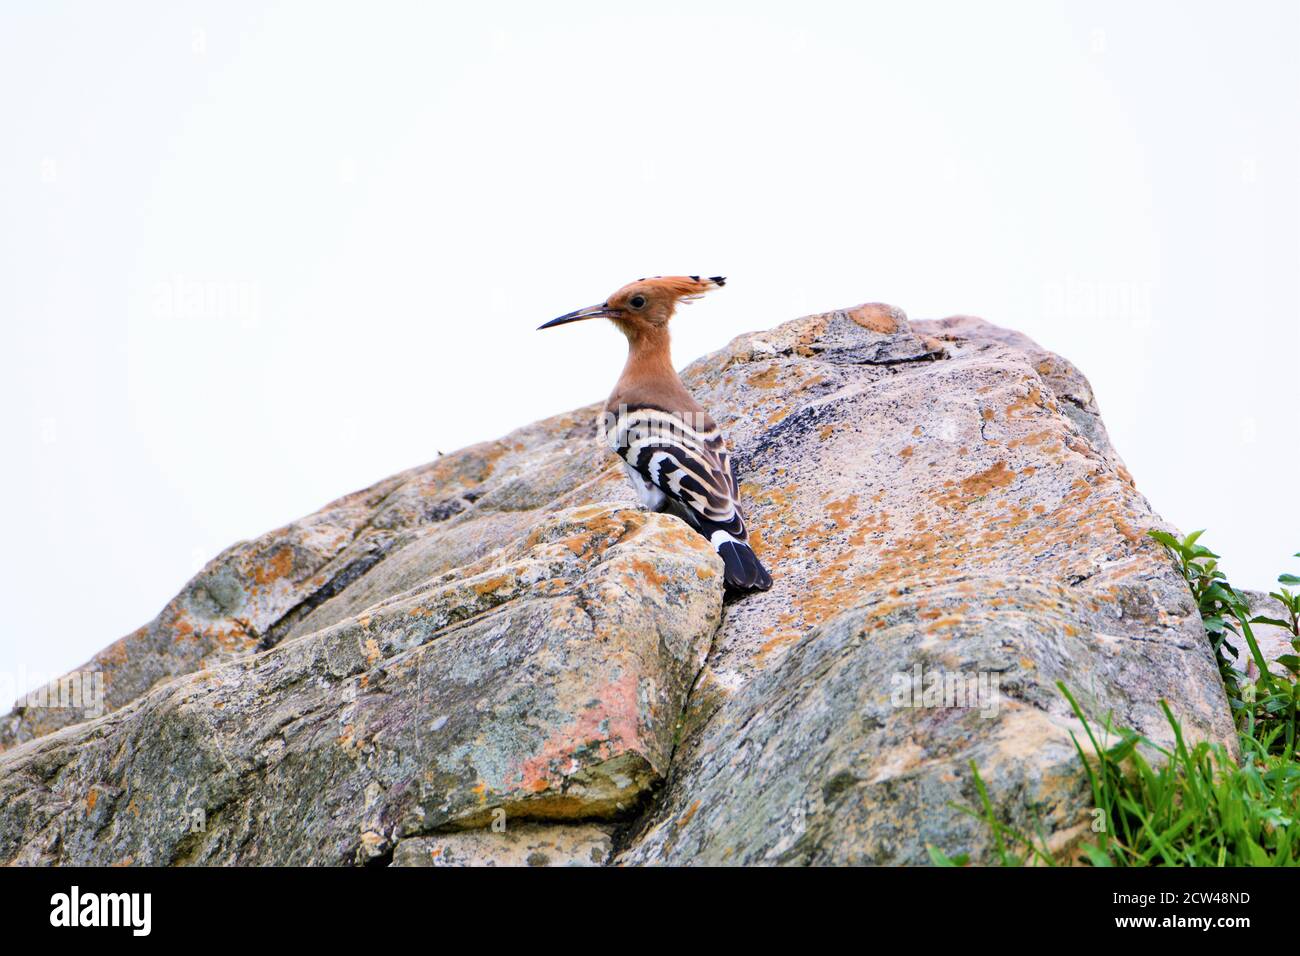 Bird - Hoopoe bird on stone Stock Photo